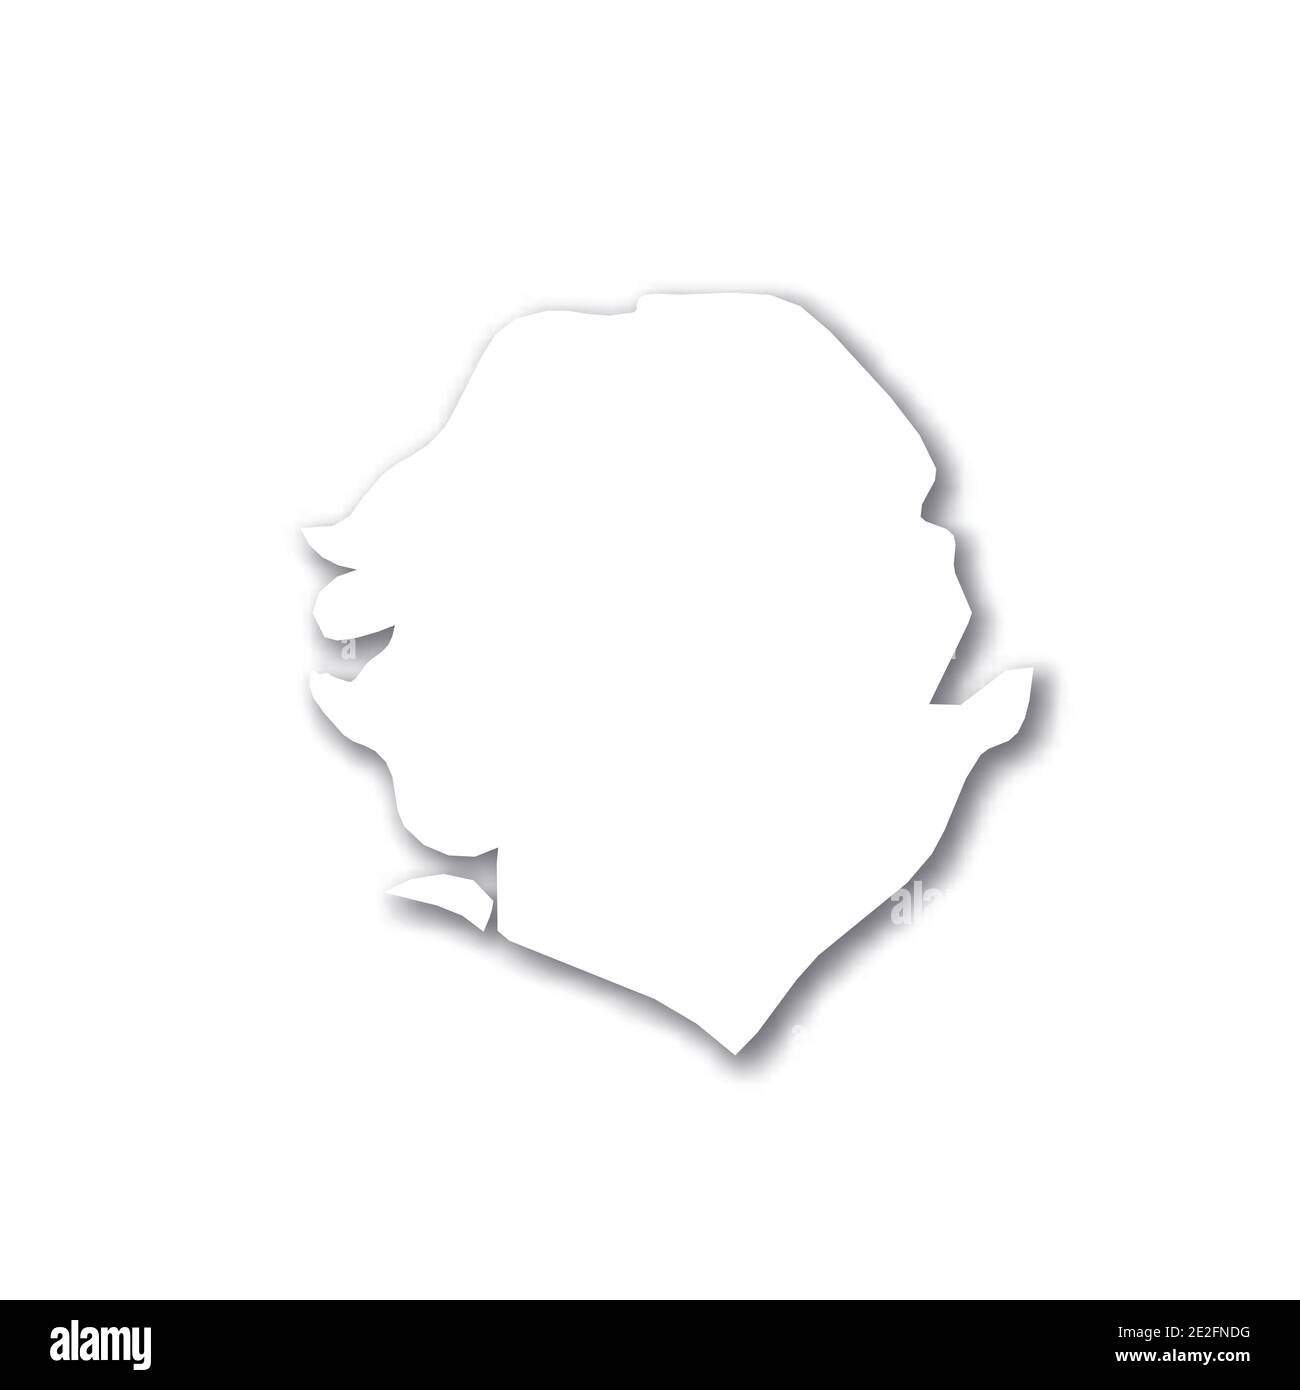 Sierra Leona Mapa Blanco De Silueta 3d De La Zona Del País Con Sombra